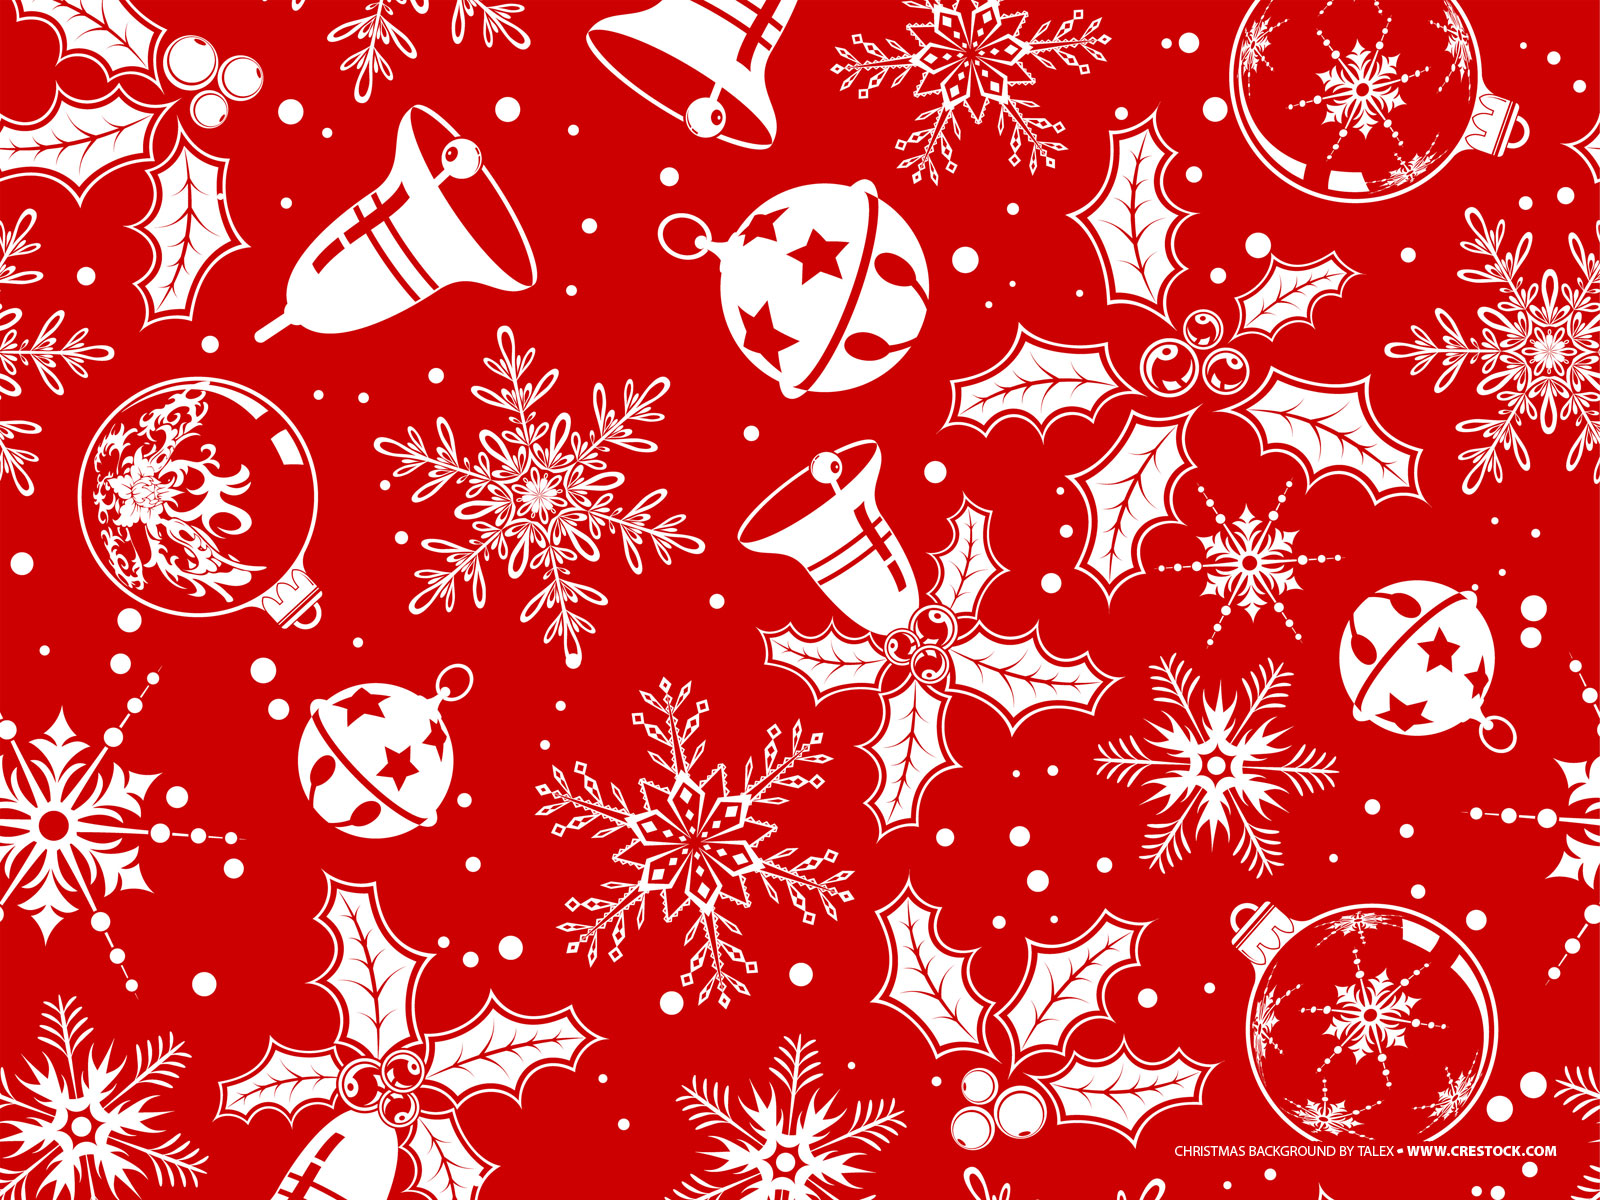 16 Stunning High Resolution Christmas Wallpapers  Blog